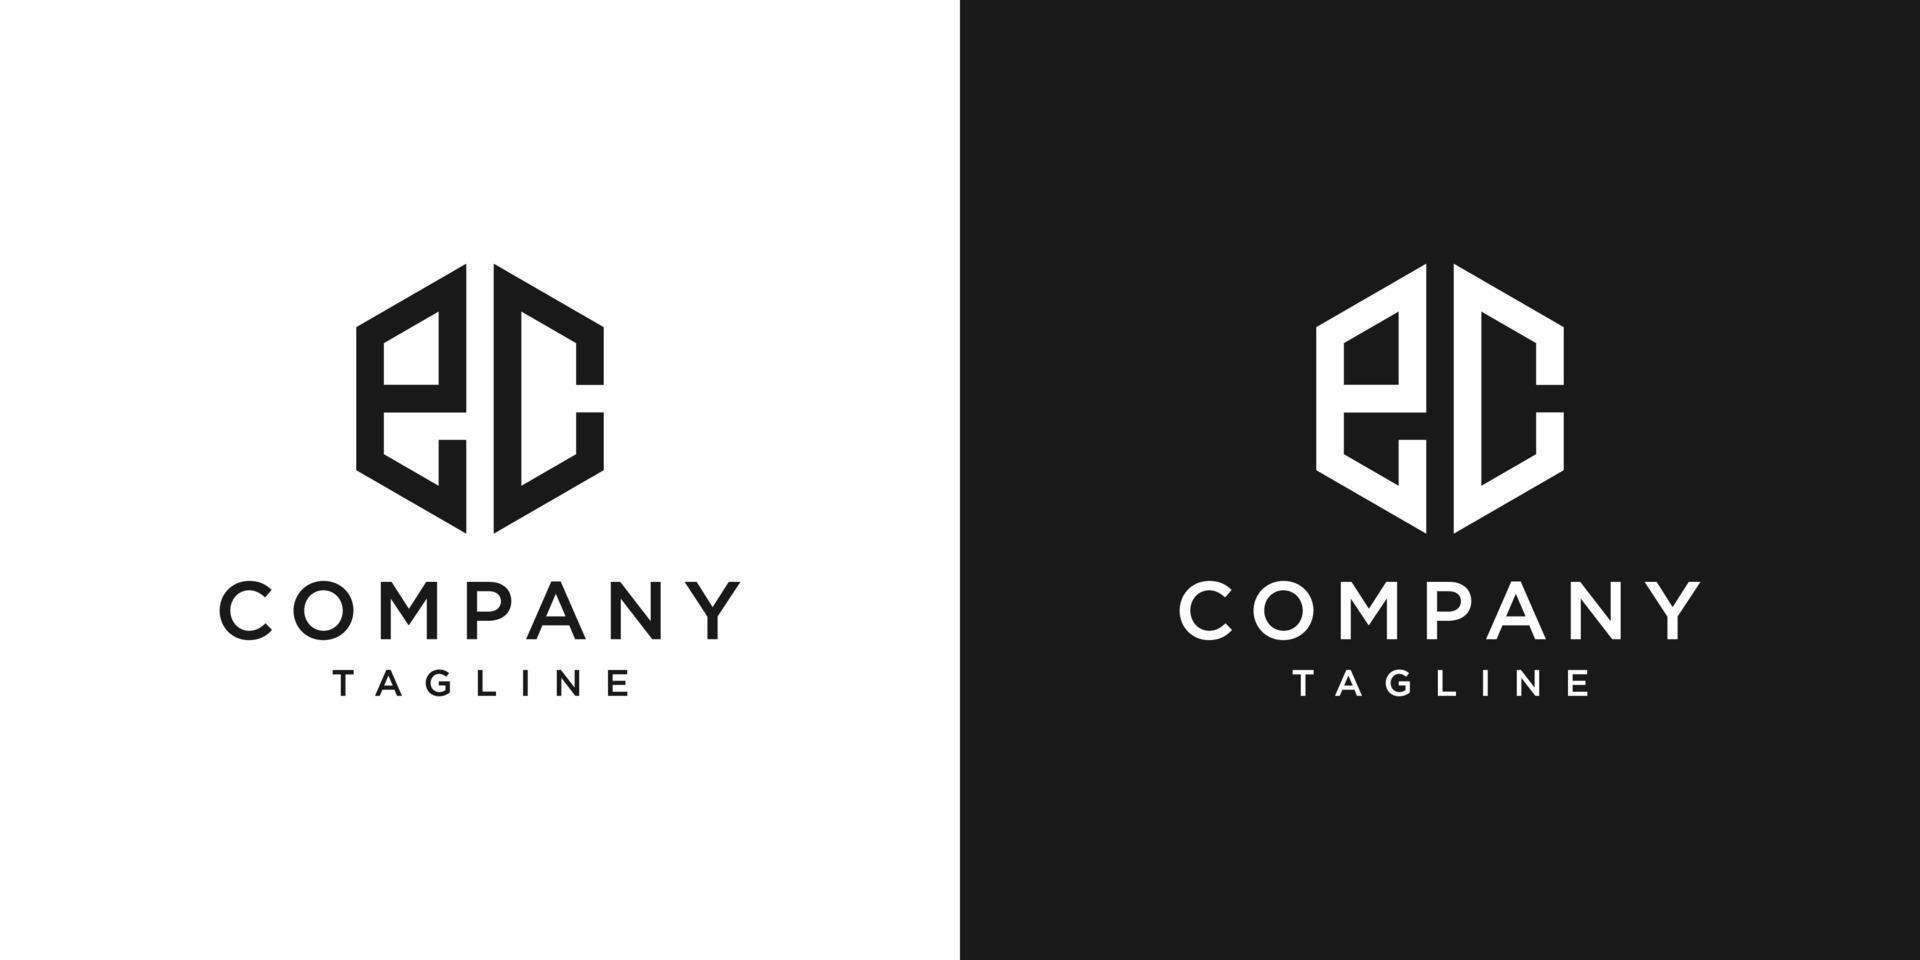 lettera creativa ec monogramma logo design modello icona sfondo bianco e nero vettore